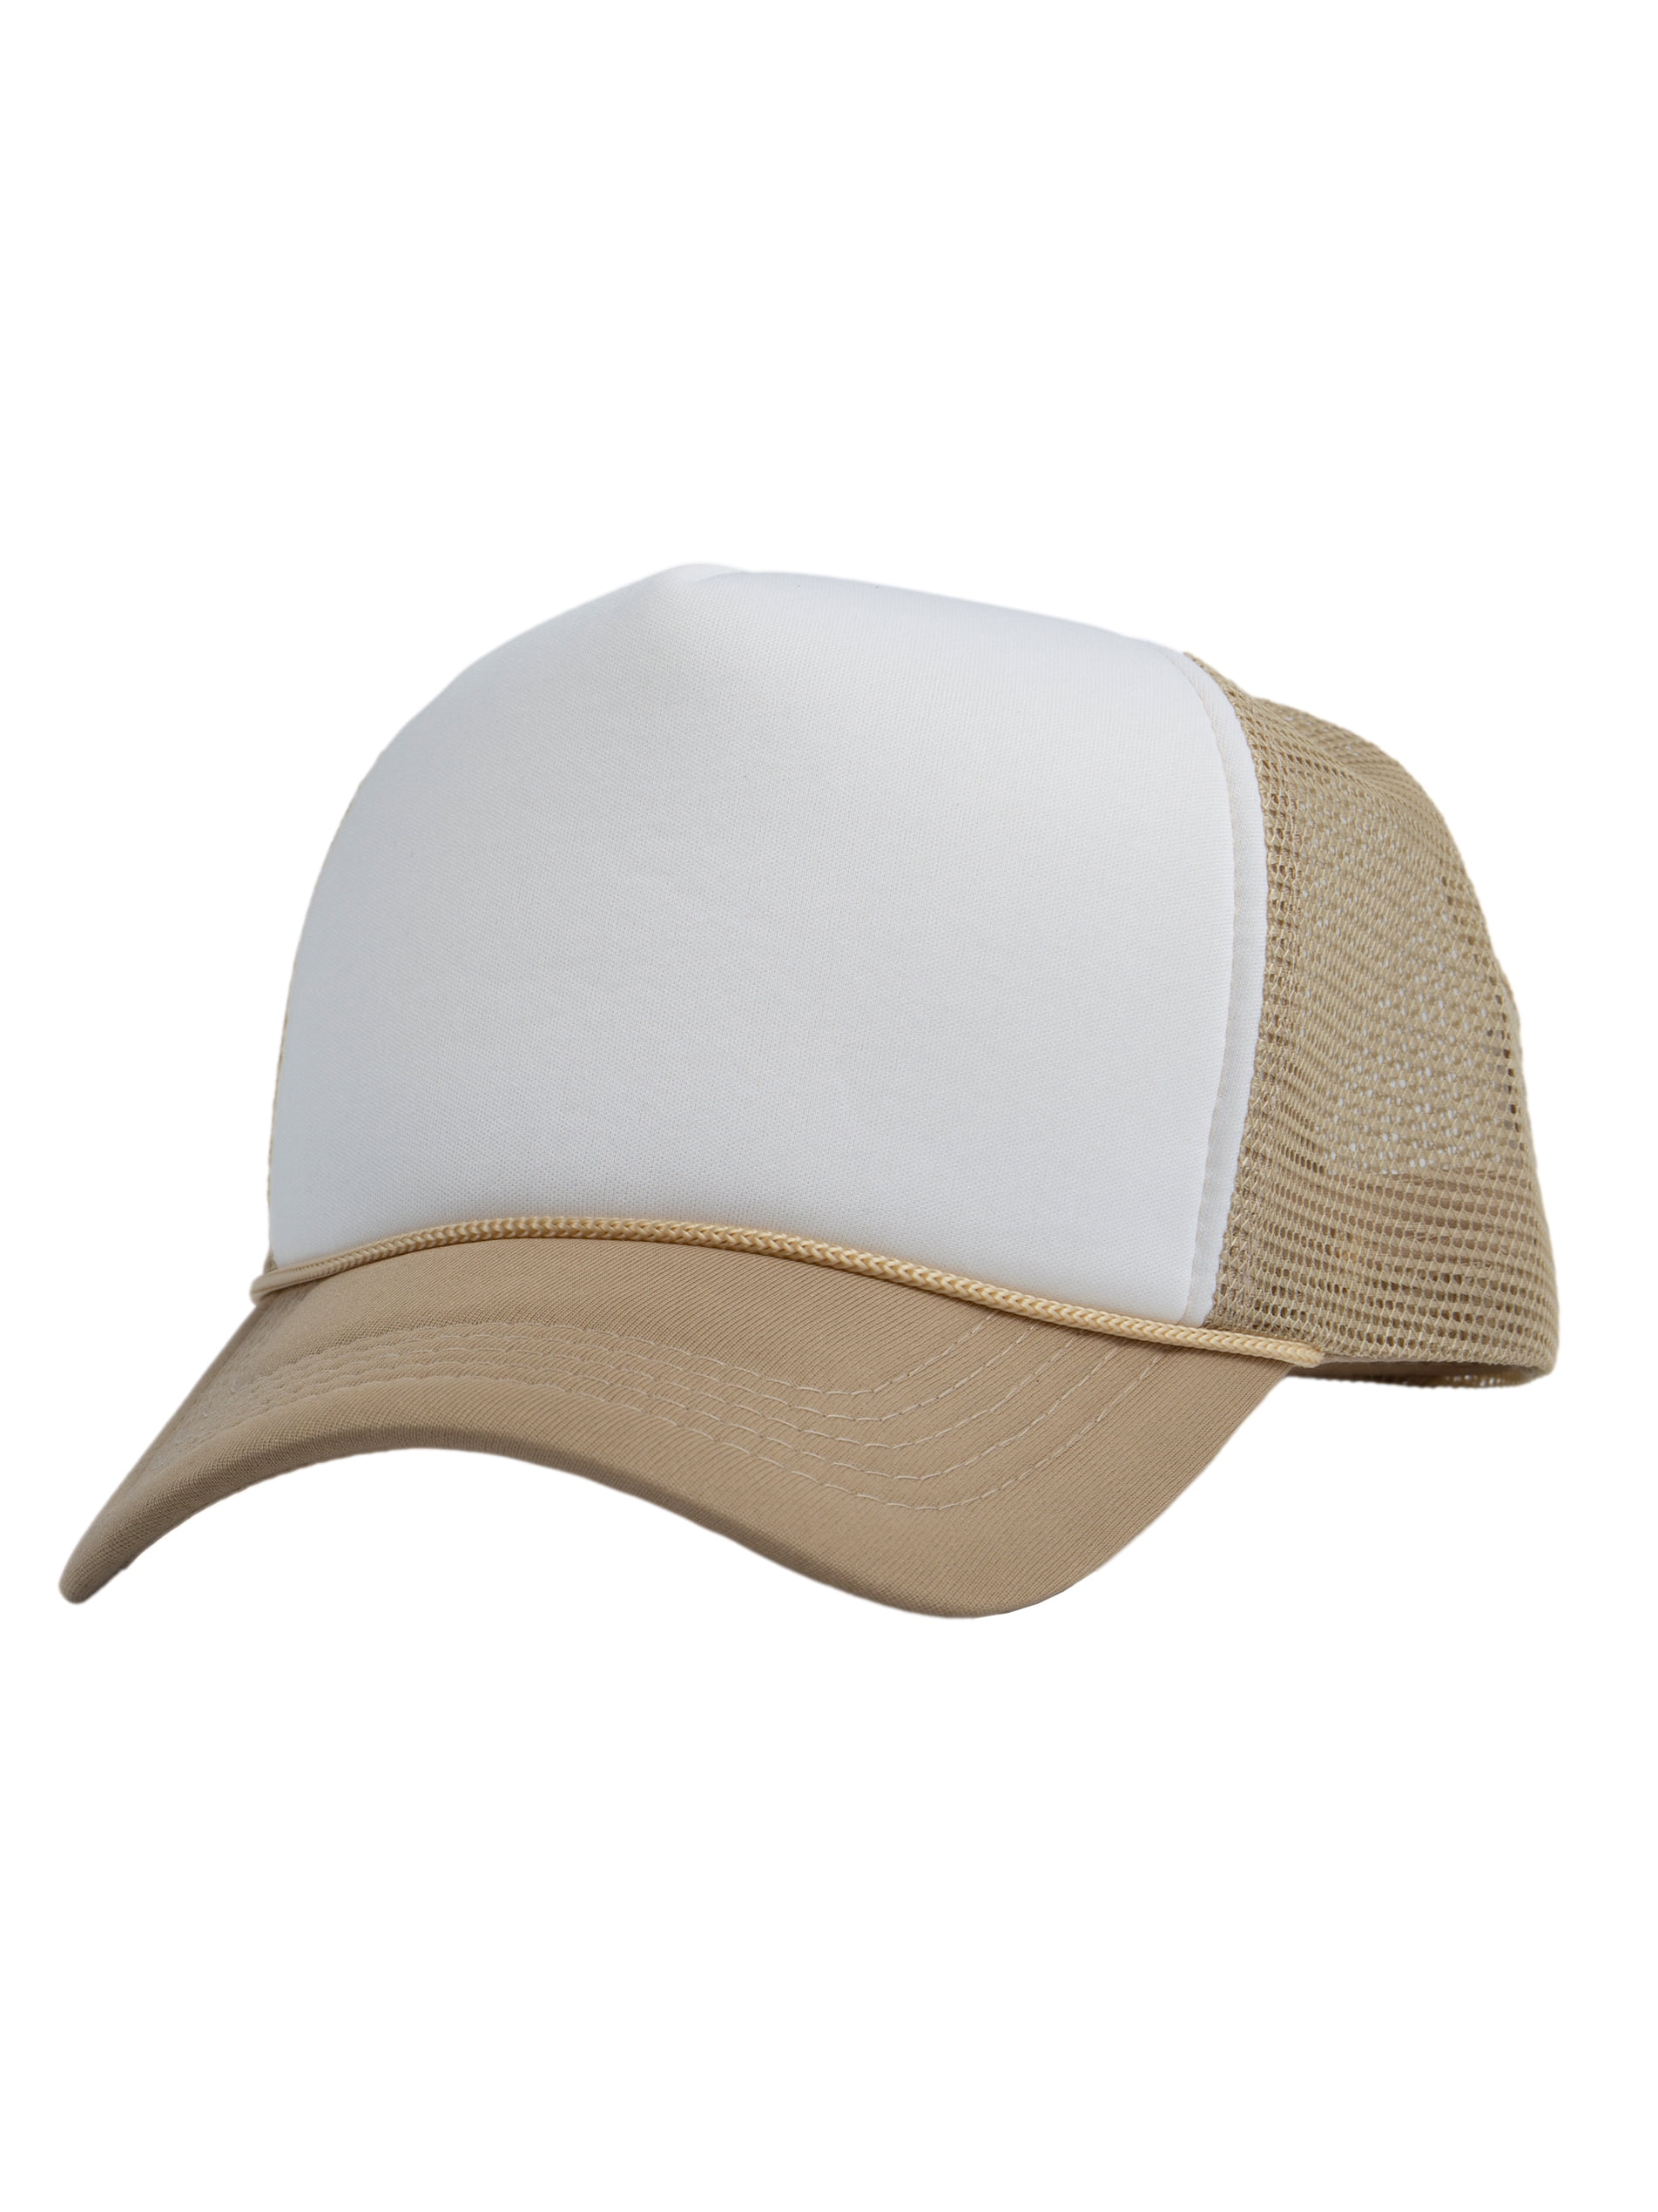 Top Headwear Blank Trucker Hat - Mens Trucker Hats Foam Mesh Snapback  White/Beige 